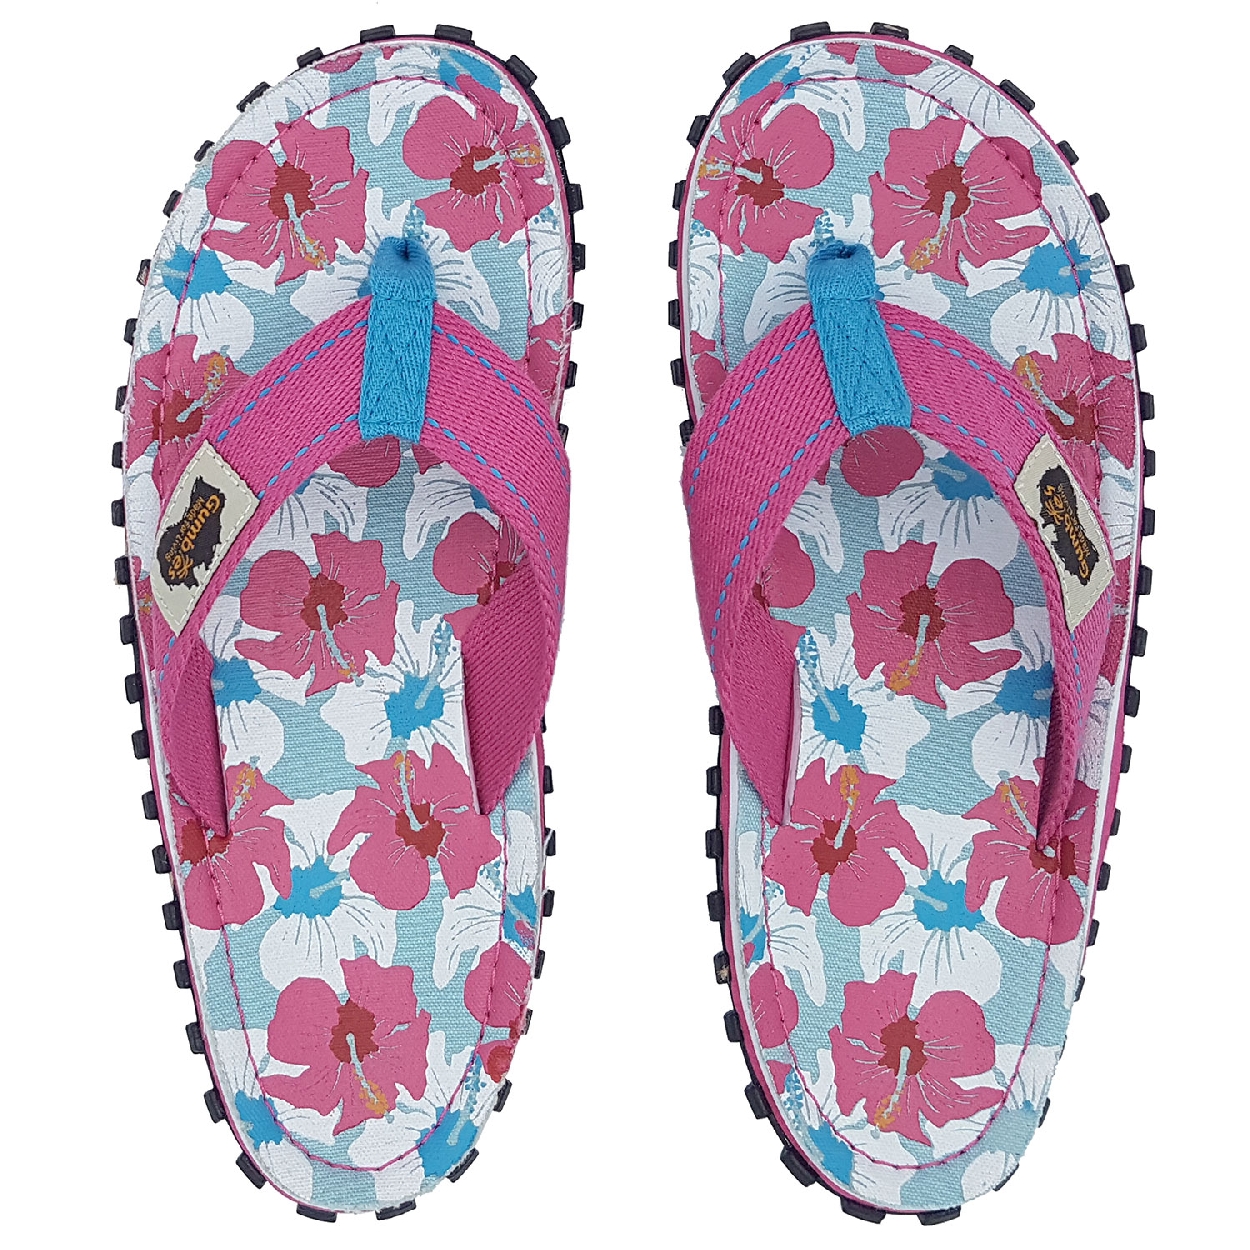 Gumbies Australian Shoes, mixed hibiscus